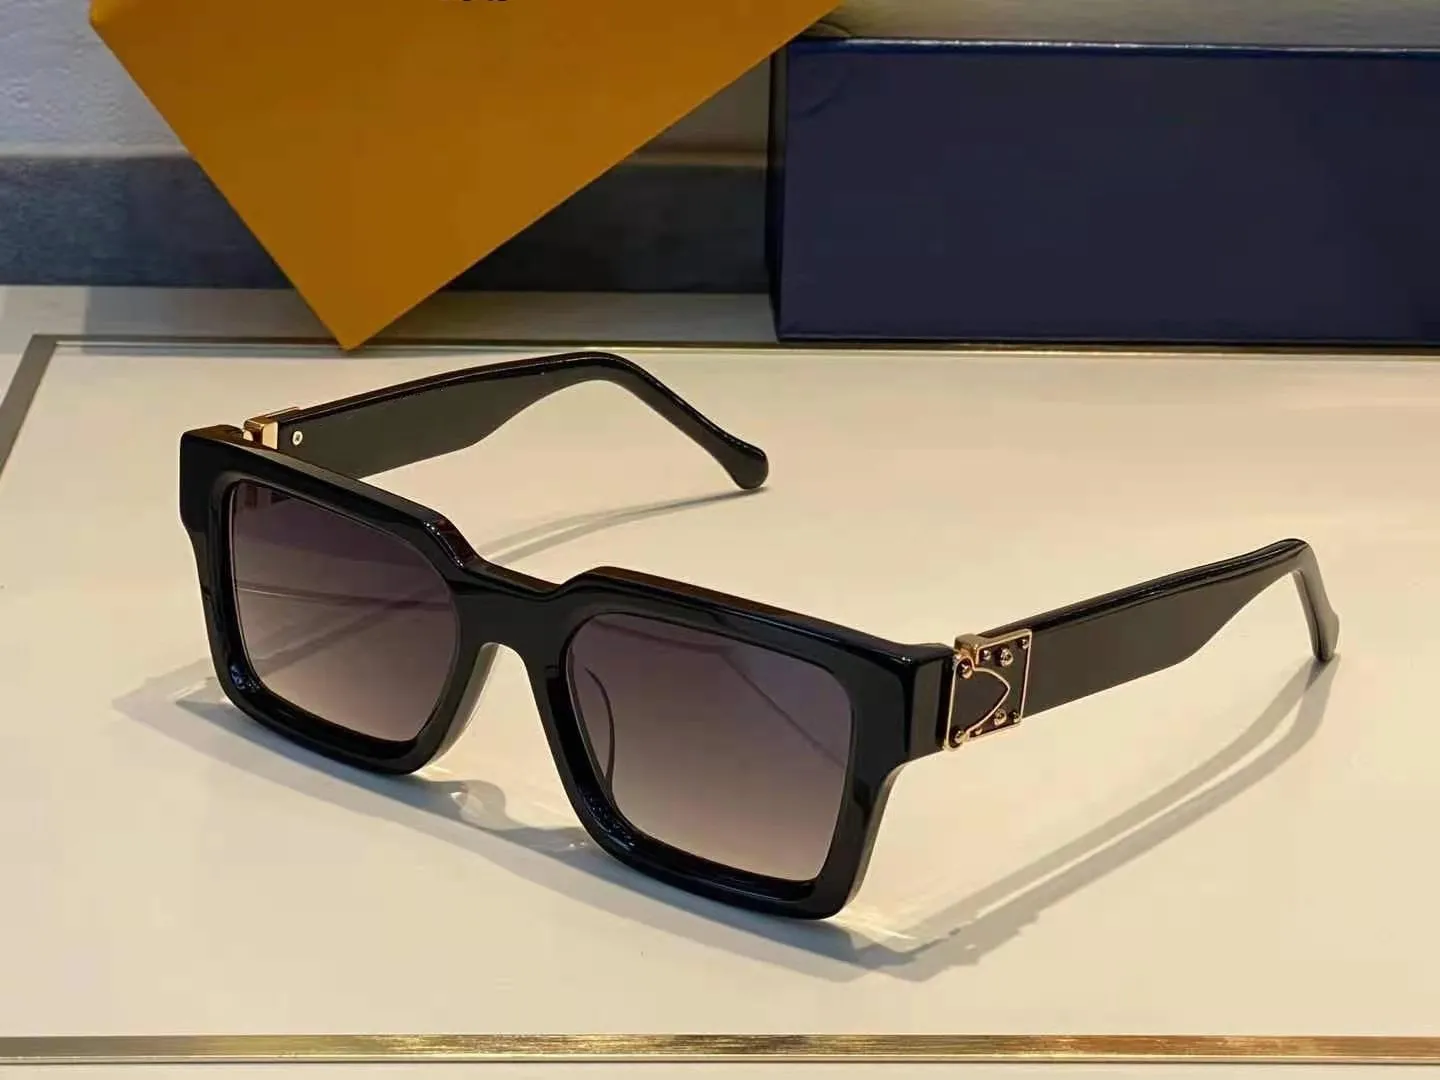 Najwyższa jakość 1413 Męskie okulary przeciwsłoneczne dla kobiet mężczyzn okularów słonecznych styl mody chroni oczy Oczy Uv400 z Case291k